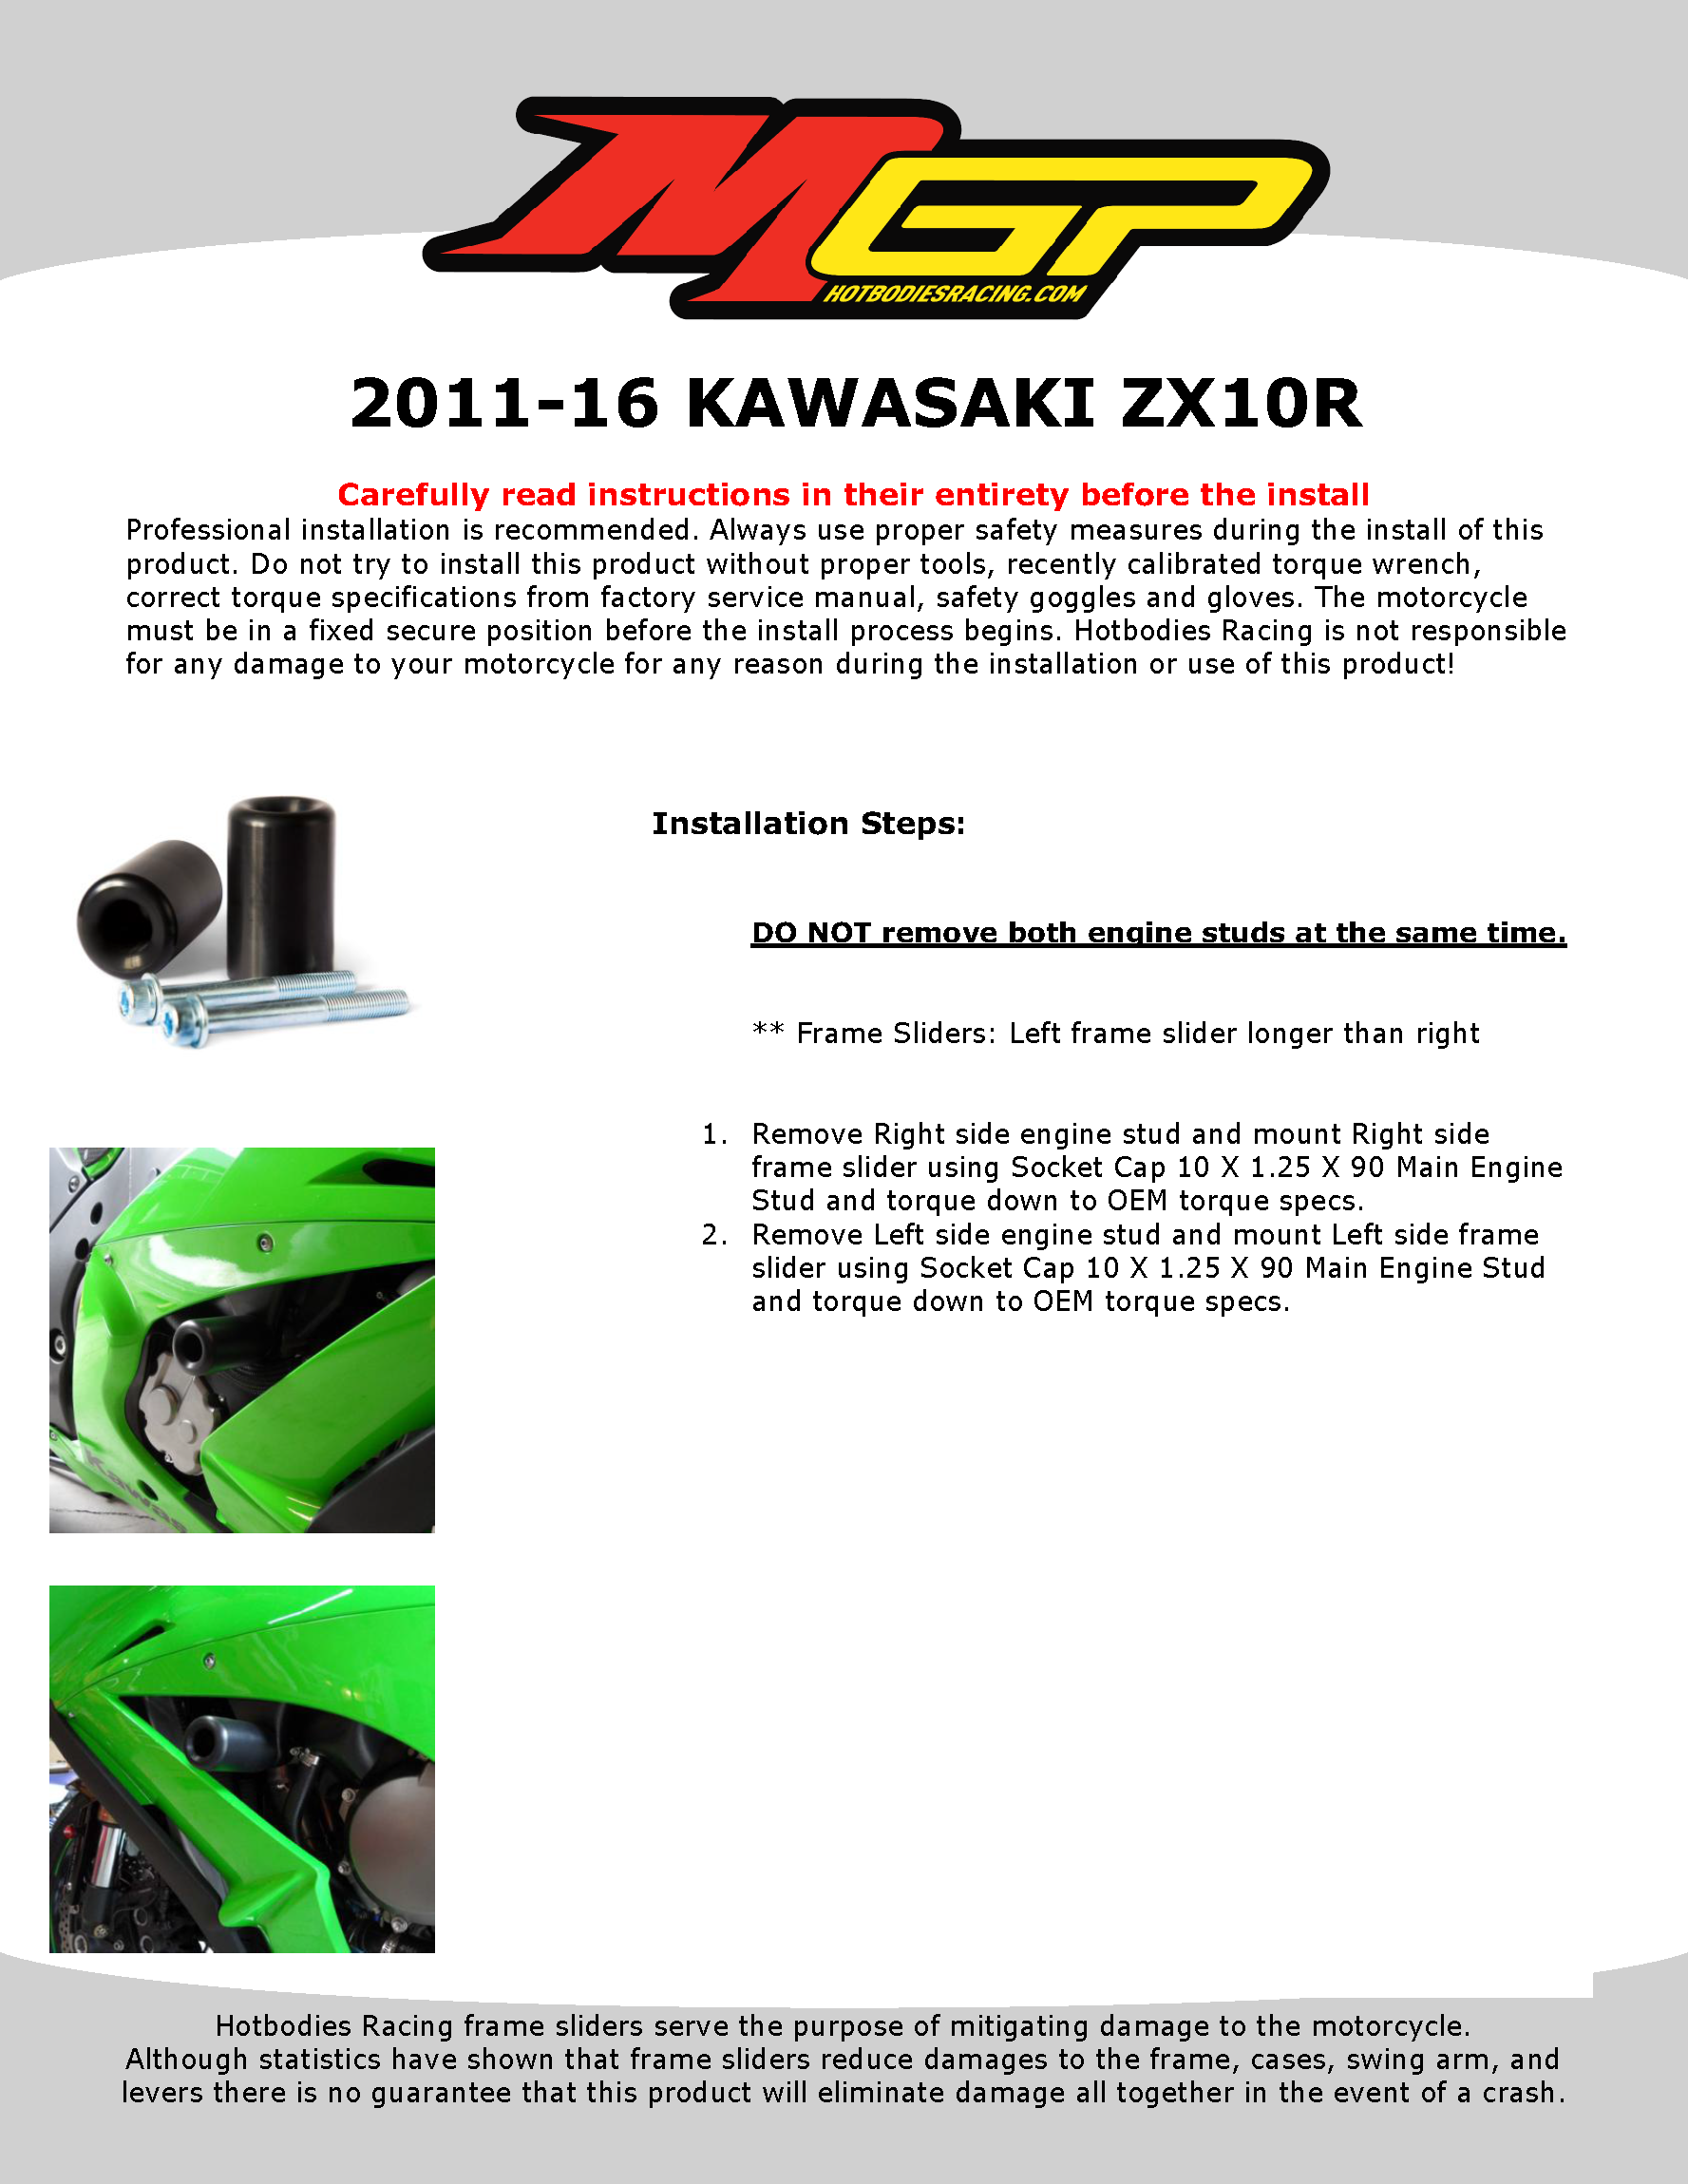 

2011-16 KAWASAKI ZX10R

